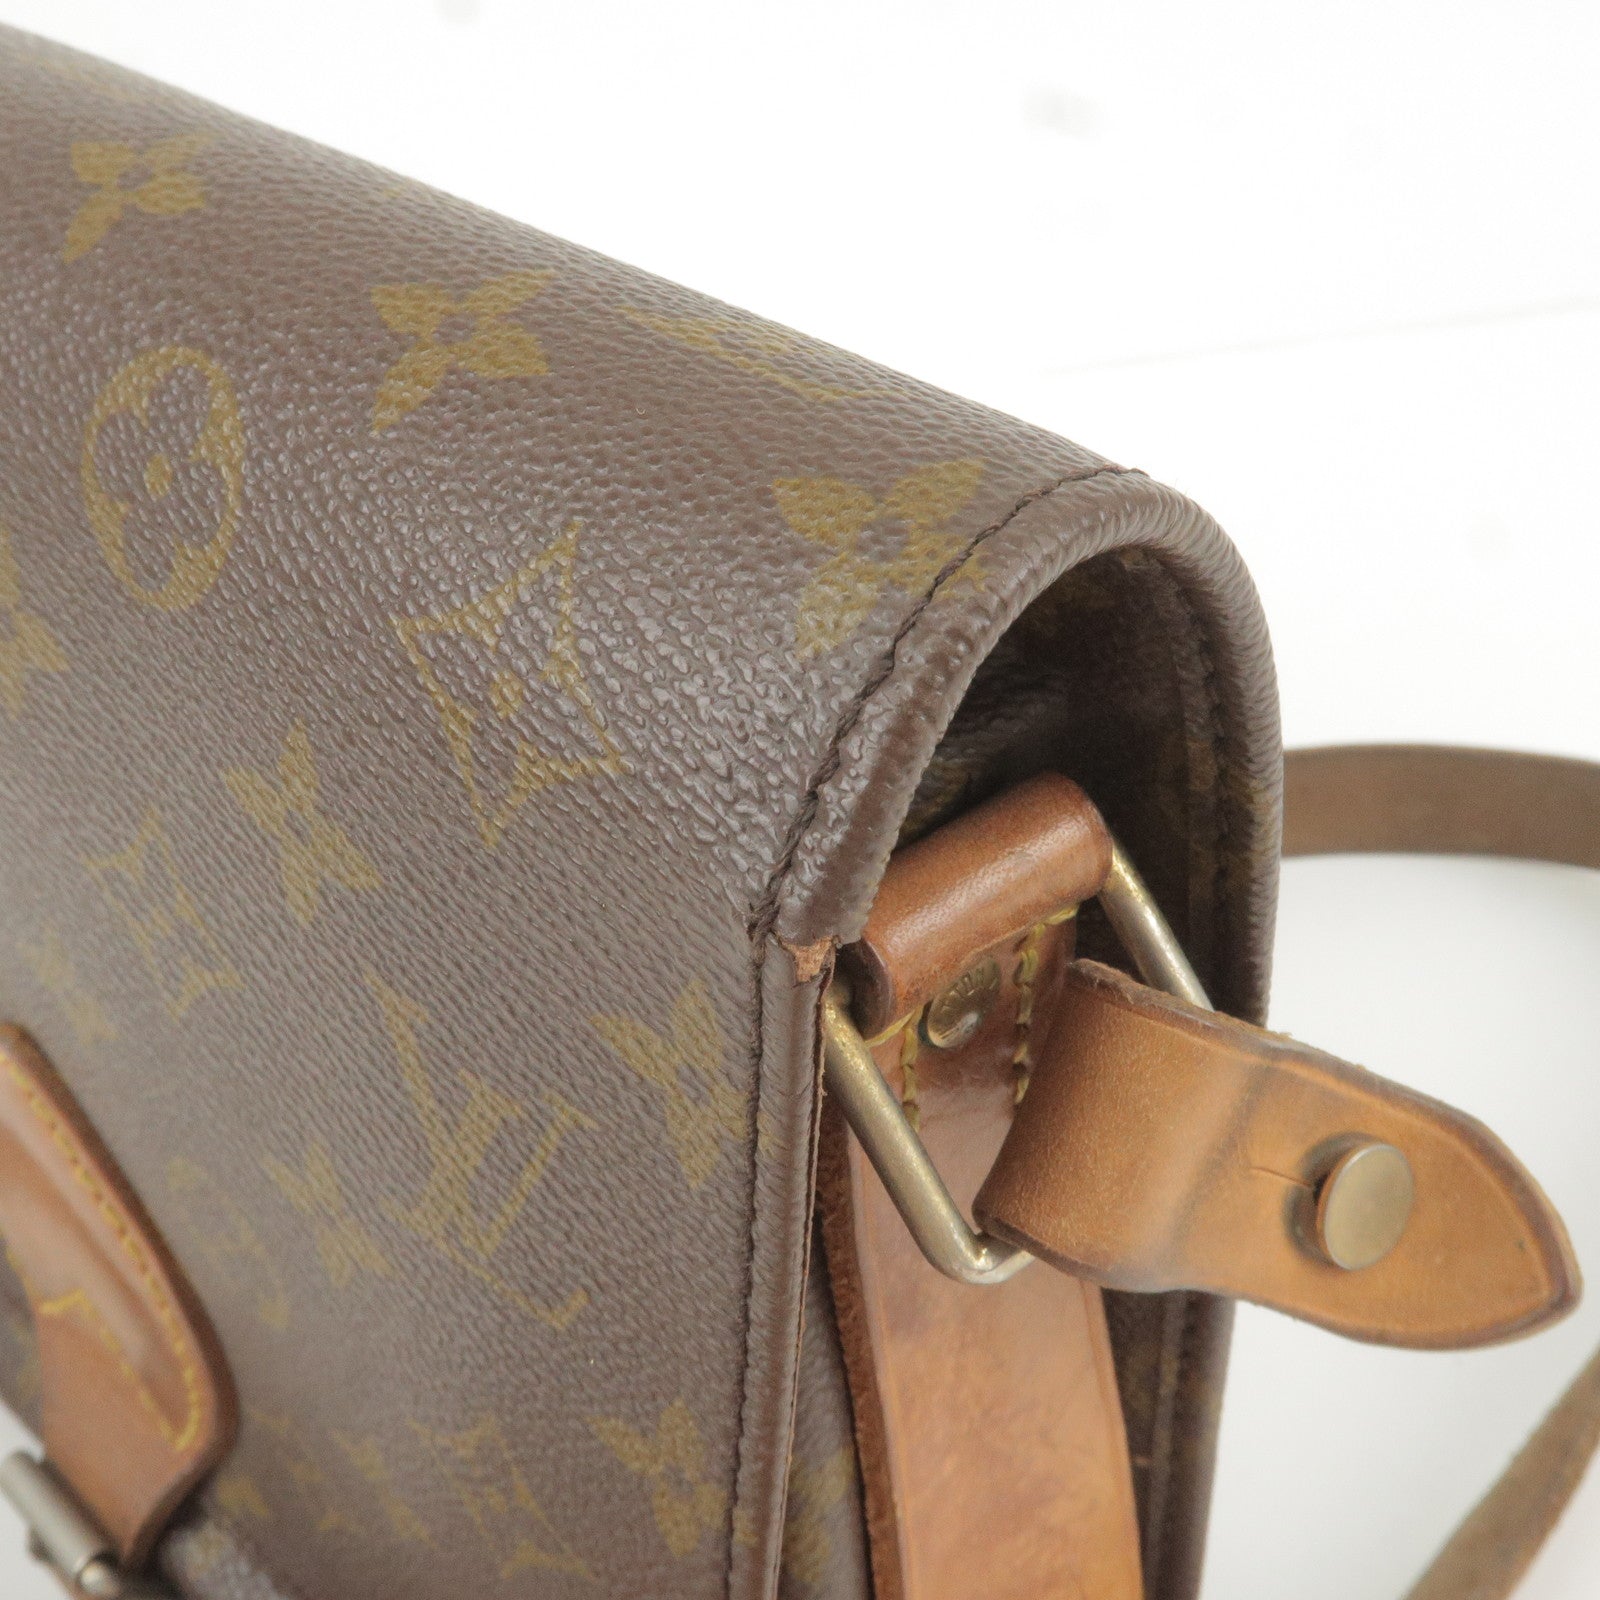 Louis Vuitton 2011 pre-owned Monogram Weekender GM Travel Bag